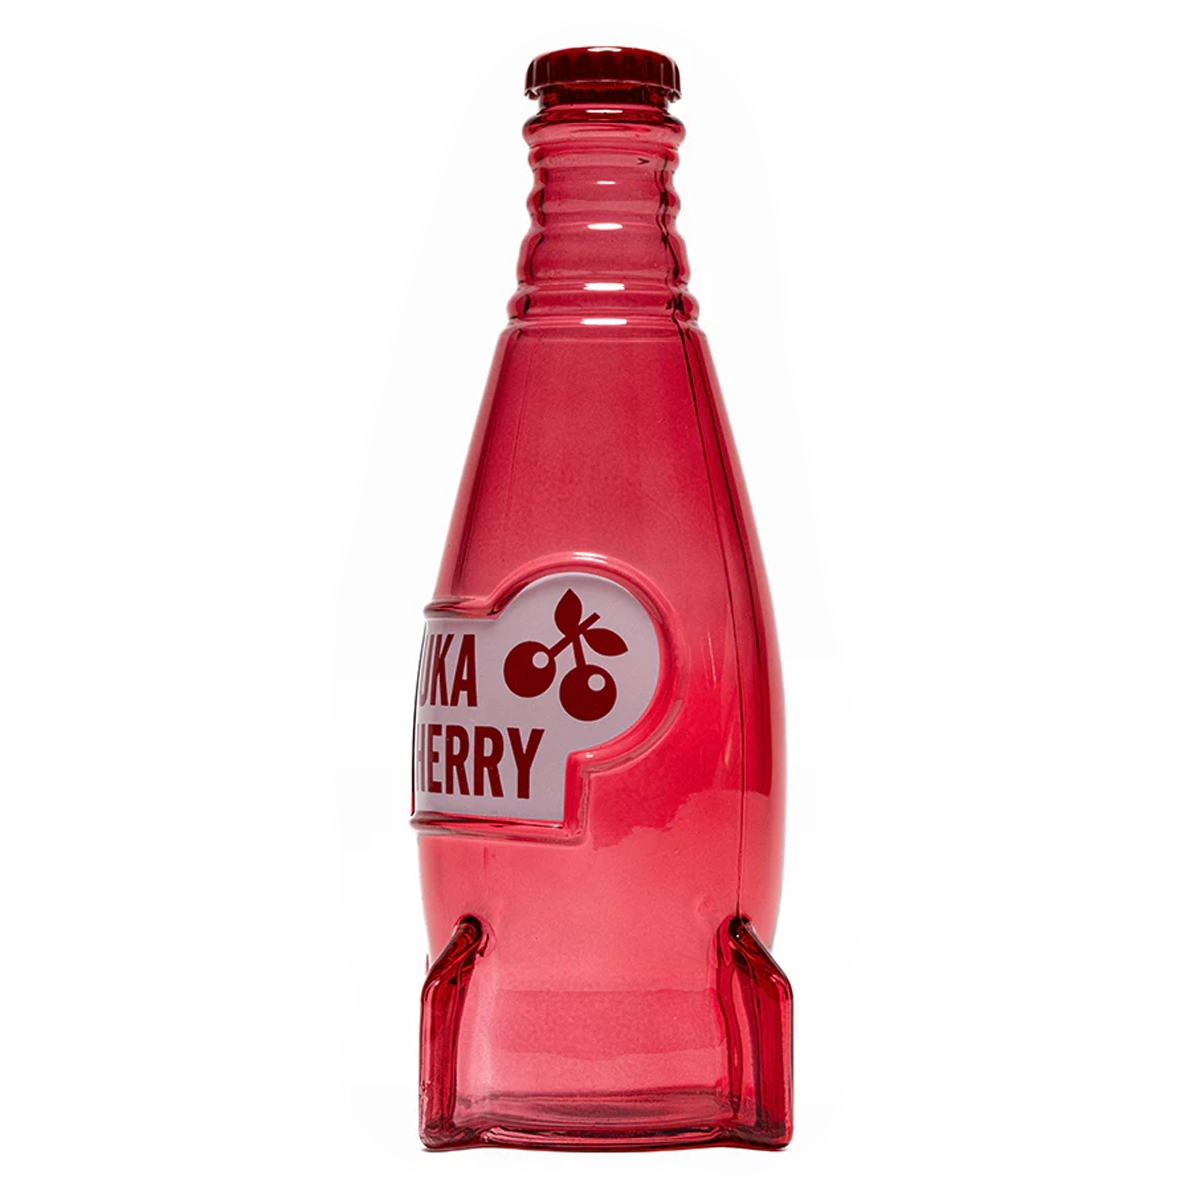 Fallout "Nuka Cola Cherry" Glasflasche und Kronkorken Image 5